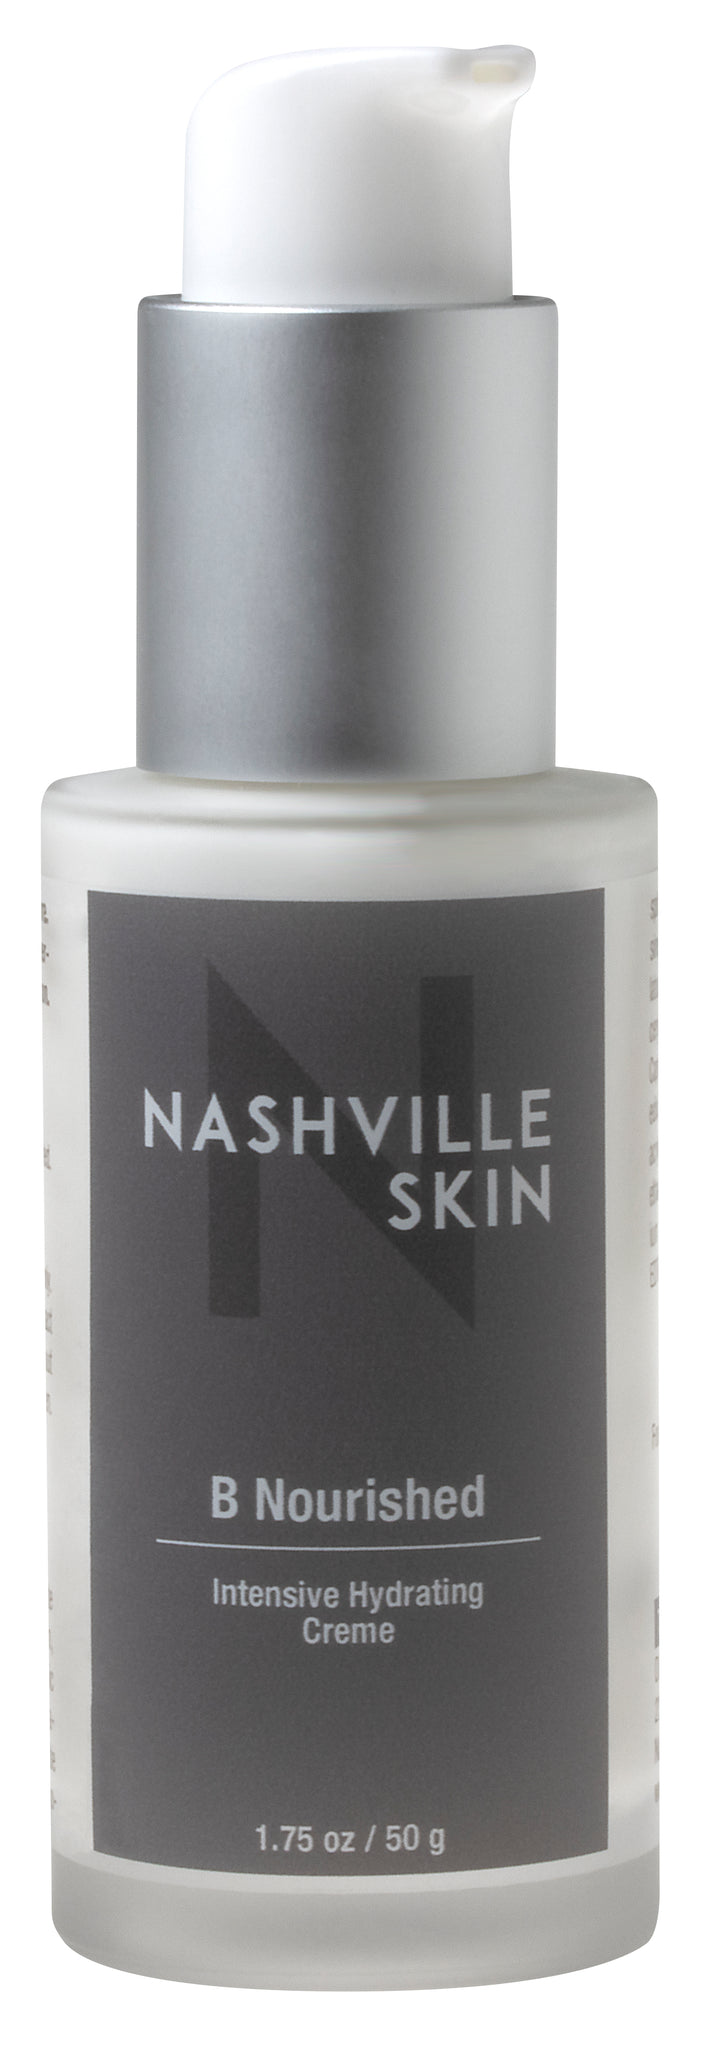 Nashville Skin B Nourished